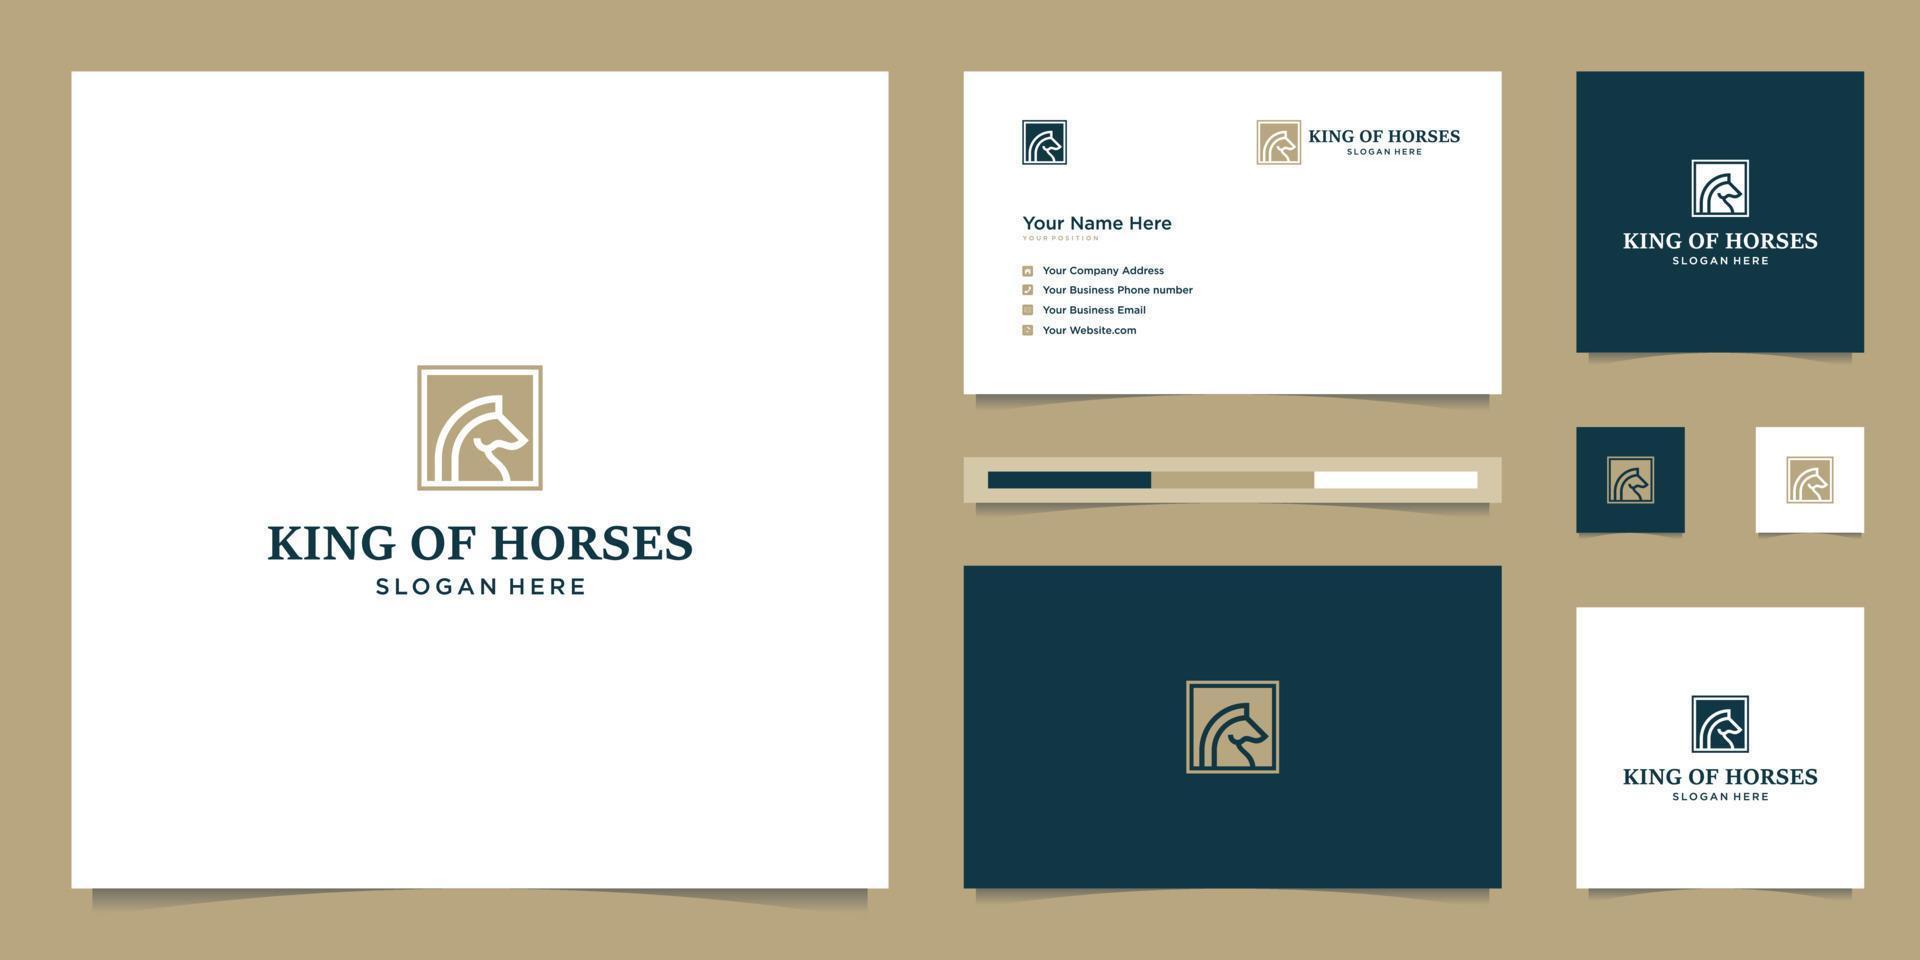 elegant koning paard met elegant grafisch ontwerp en naam kaart inspiratie luxe ontwerp logo vector